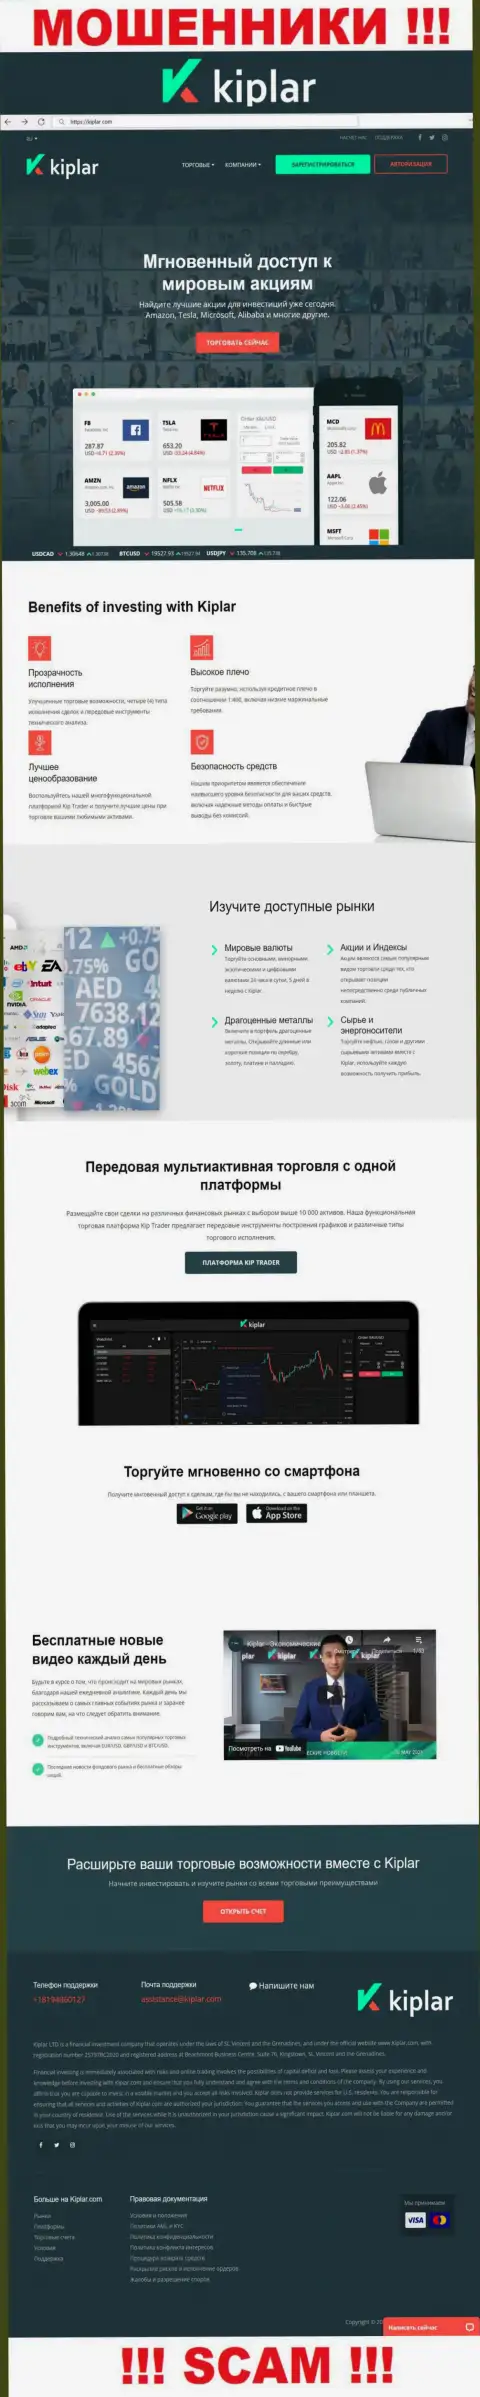 Киплар Ком - официальный портал internet мошенников Kiplar